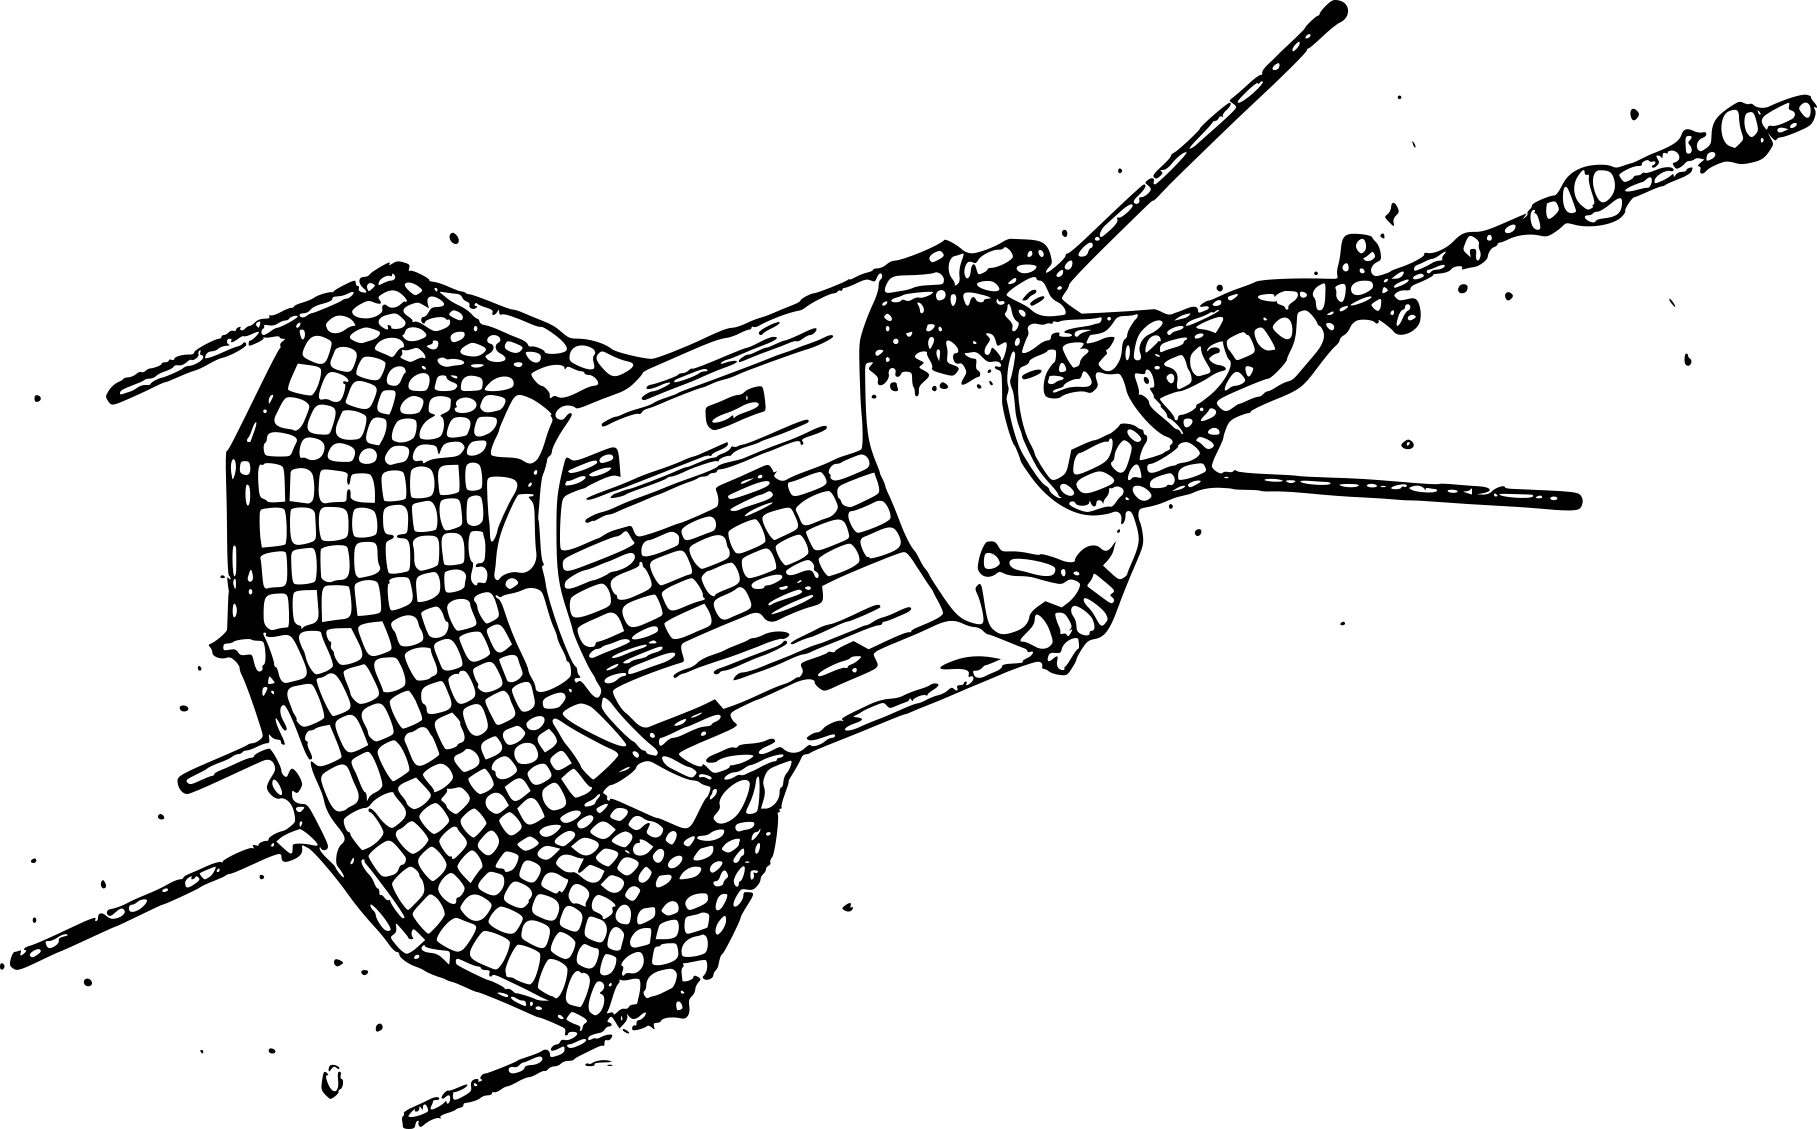 Чертеж ИСЗ Спутник 1. Космический аппарат "Гео-ИК" 2. Космический аппарат "Гео-ИК" 2 чертежи. ИСЗ «Коперник». Первый спутник рисунок